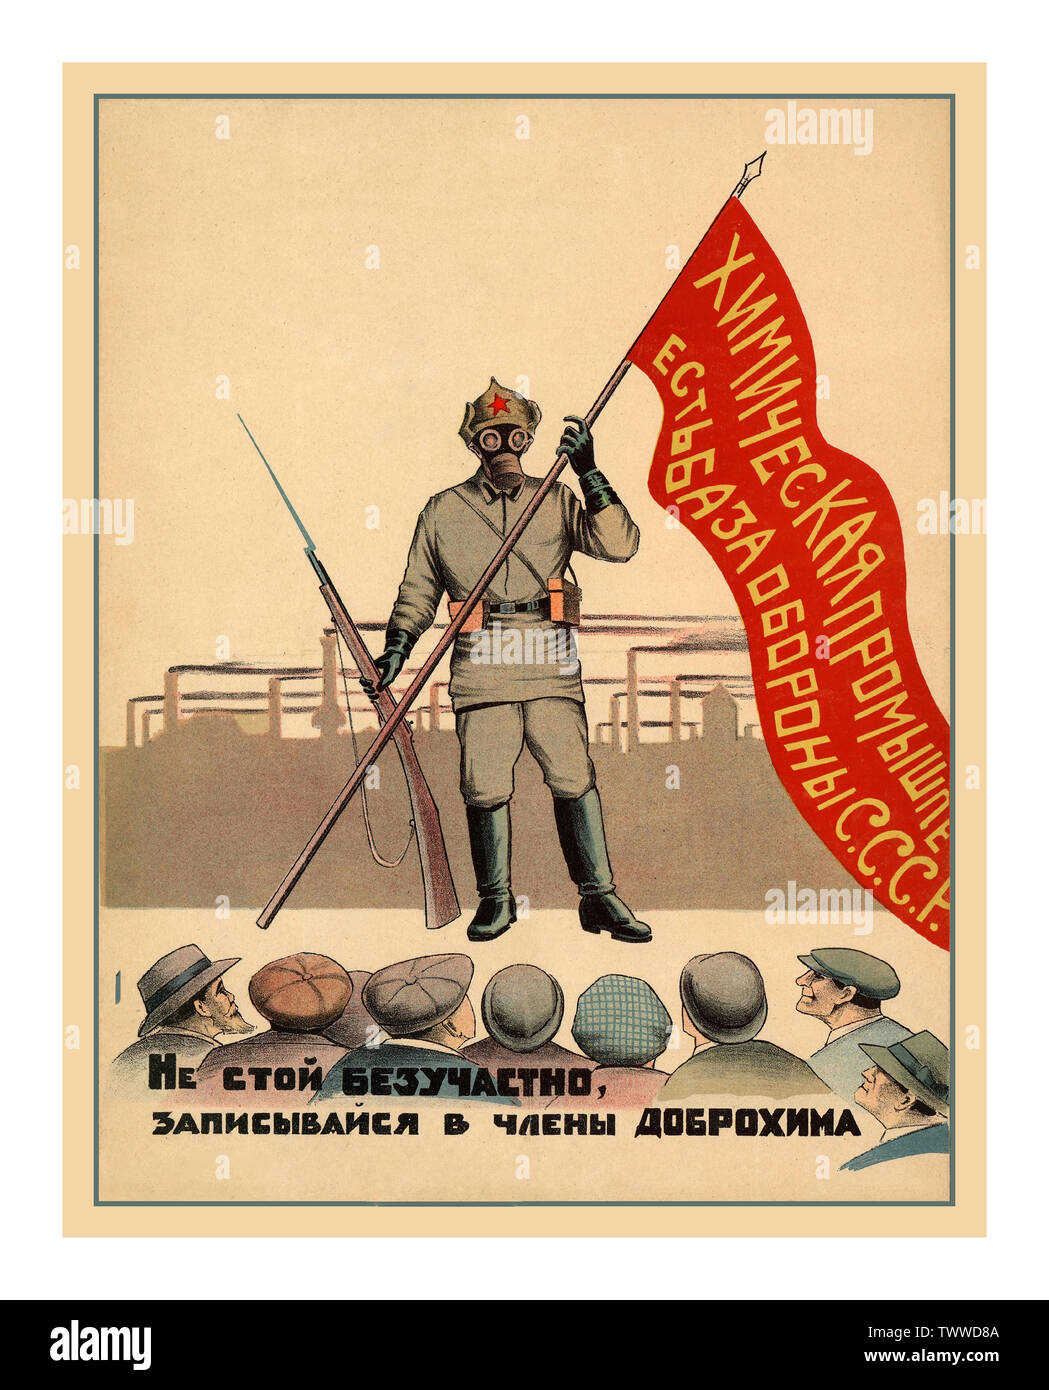 Jahrgang 1925 russisch-sowjetischen Propaganda Poster für "Die chemische Kriegsführung der Industrie ist die Basis für die Verteidigung der UDSSR: Nicht gleichgültig gegenüber stehen, melden Sie sich als Mitglied der Dobrokhim" Plakat 1925 Leningrad Typolithography der Akademie - Farblithographie Stockfoto